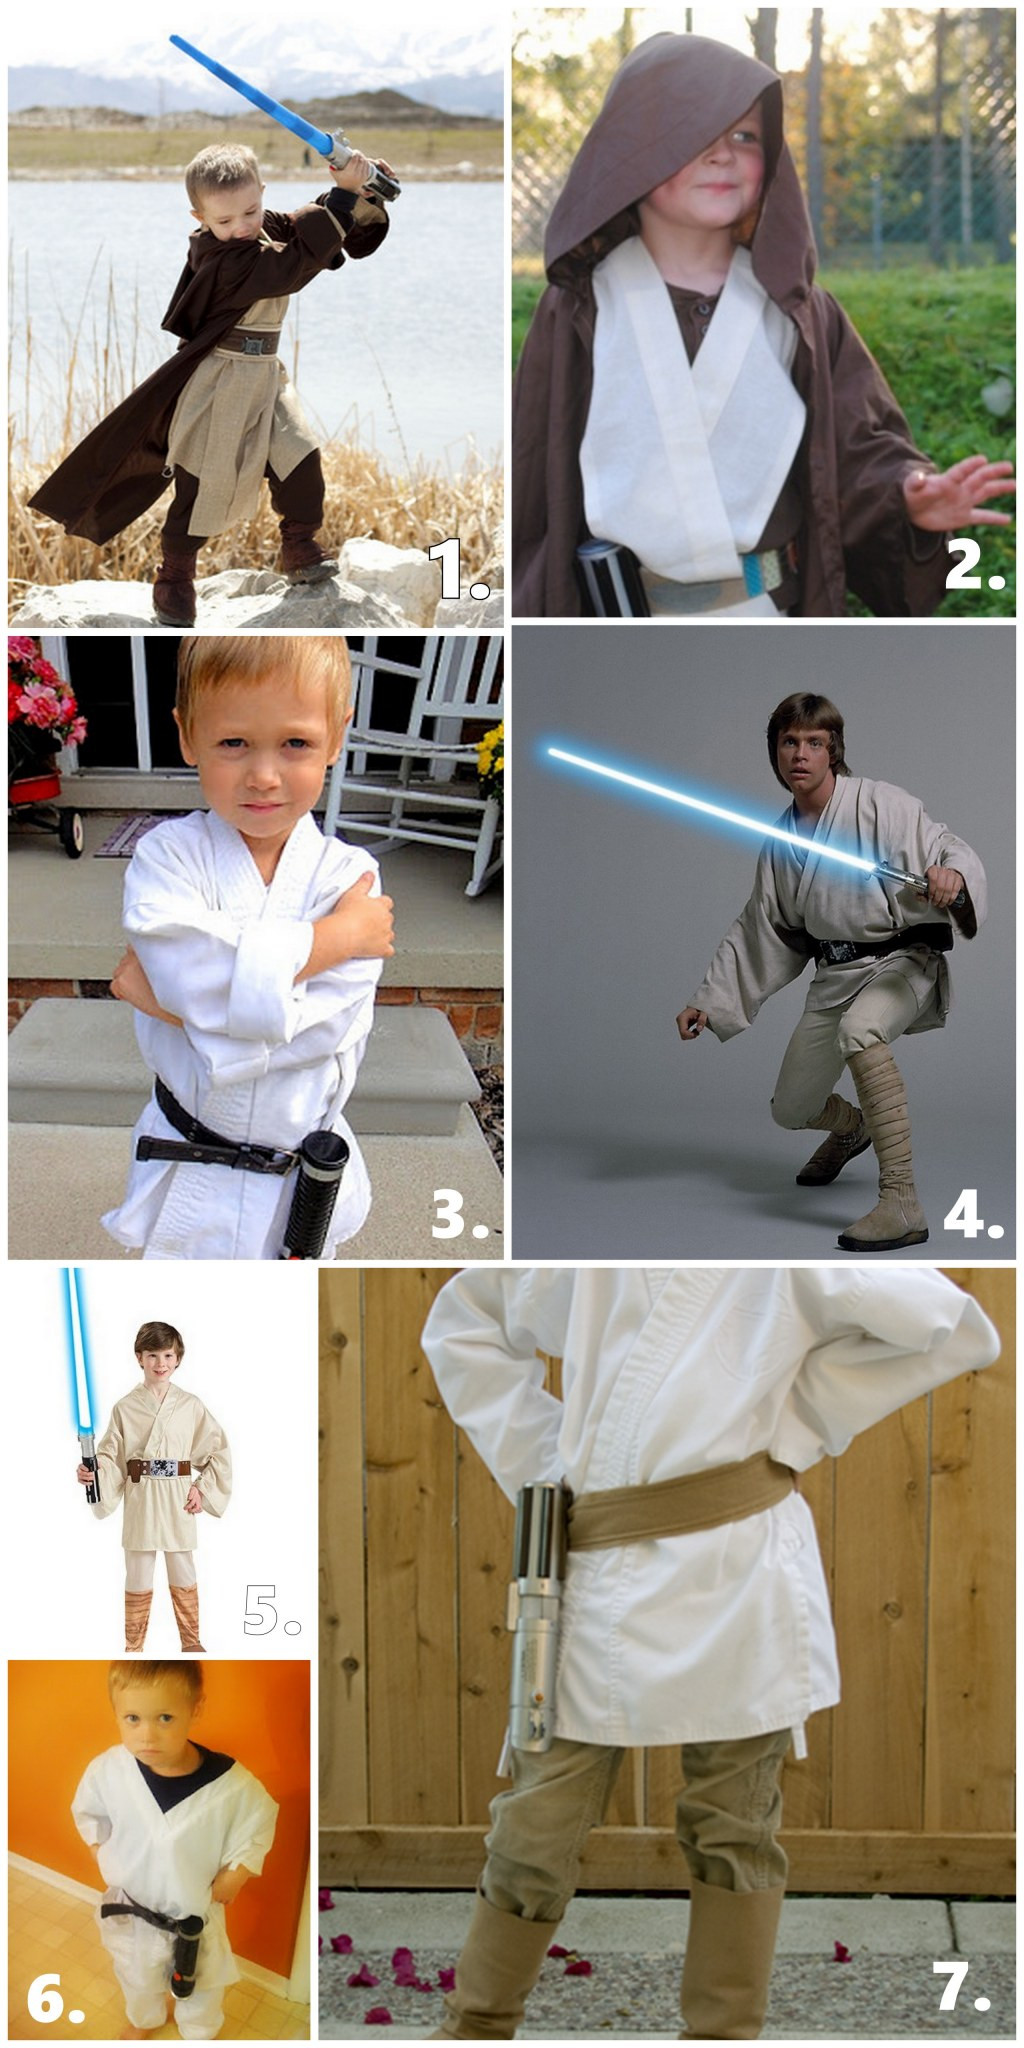 Best ideas about DIY Luke Skywalker Costumes
. Save or Pin Cheap DIY Luke Skywalker Costume Ideas Now.